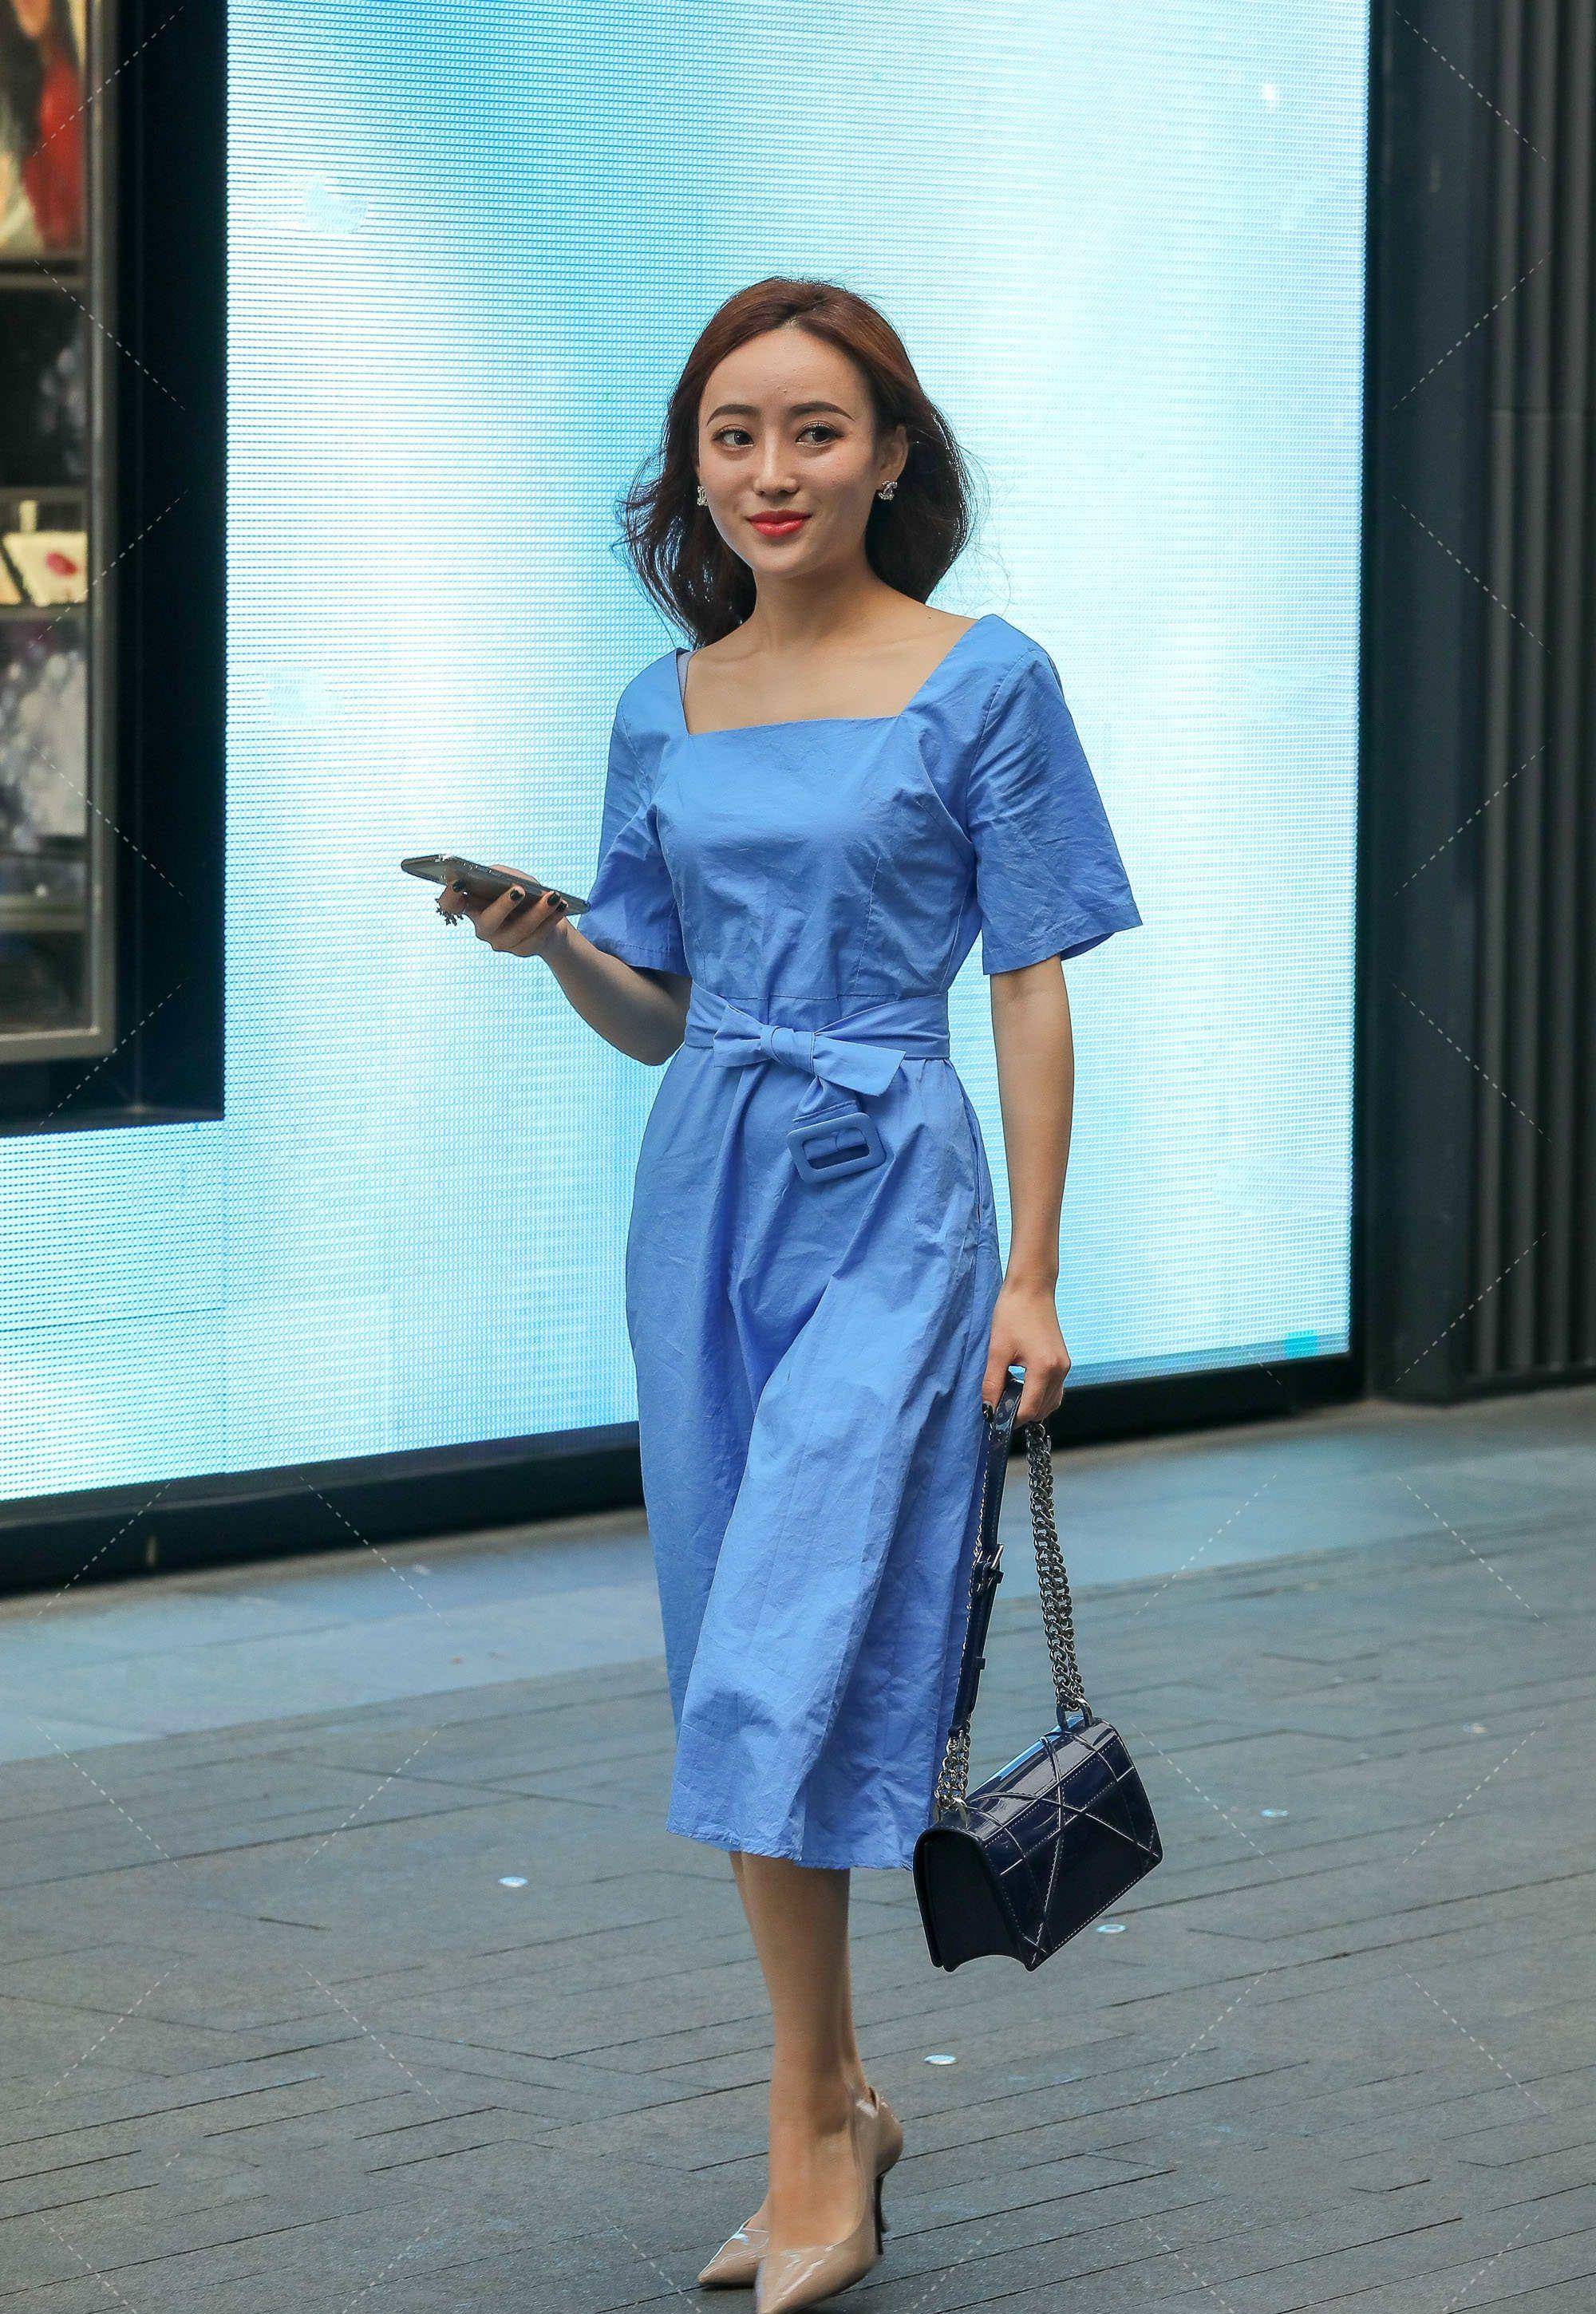 蓝色连衣裙清新脱俗,甜美风十足,色彩丰富很好看